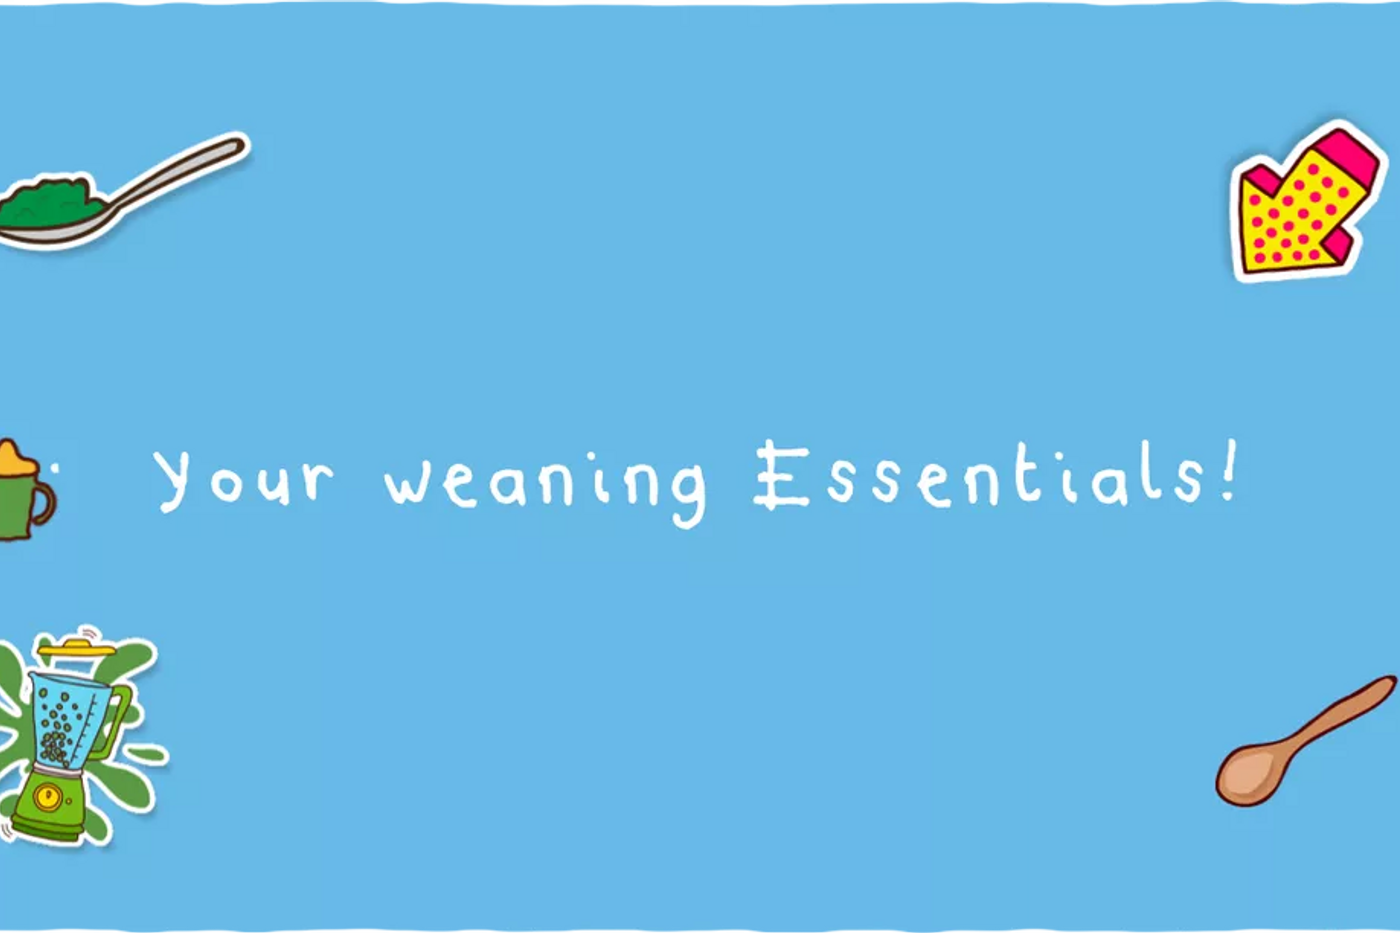 Weaning essentials checklist